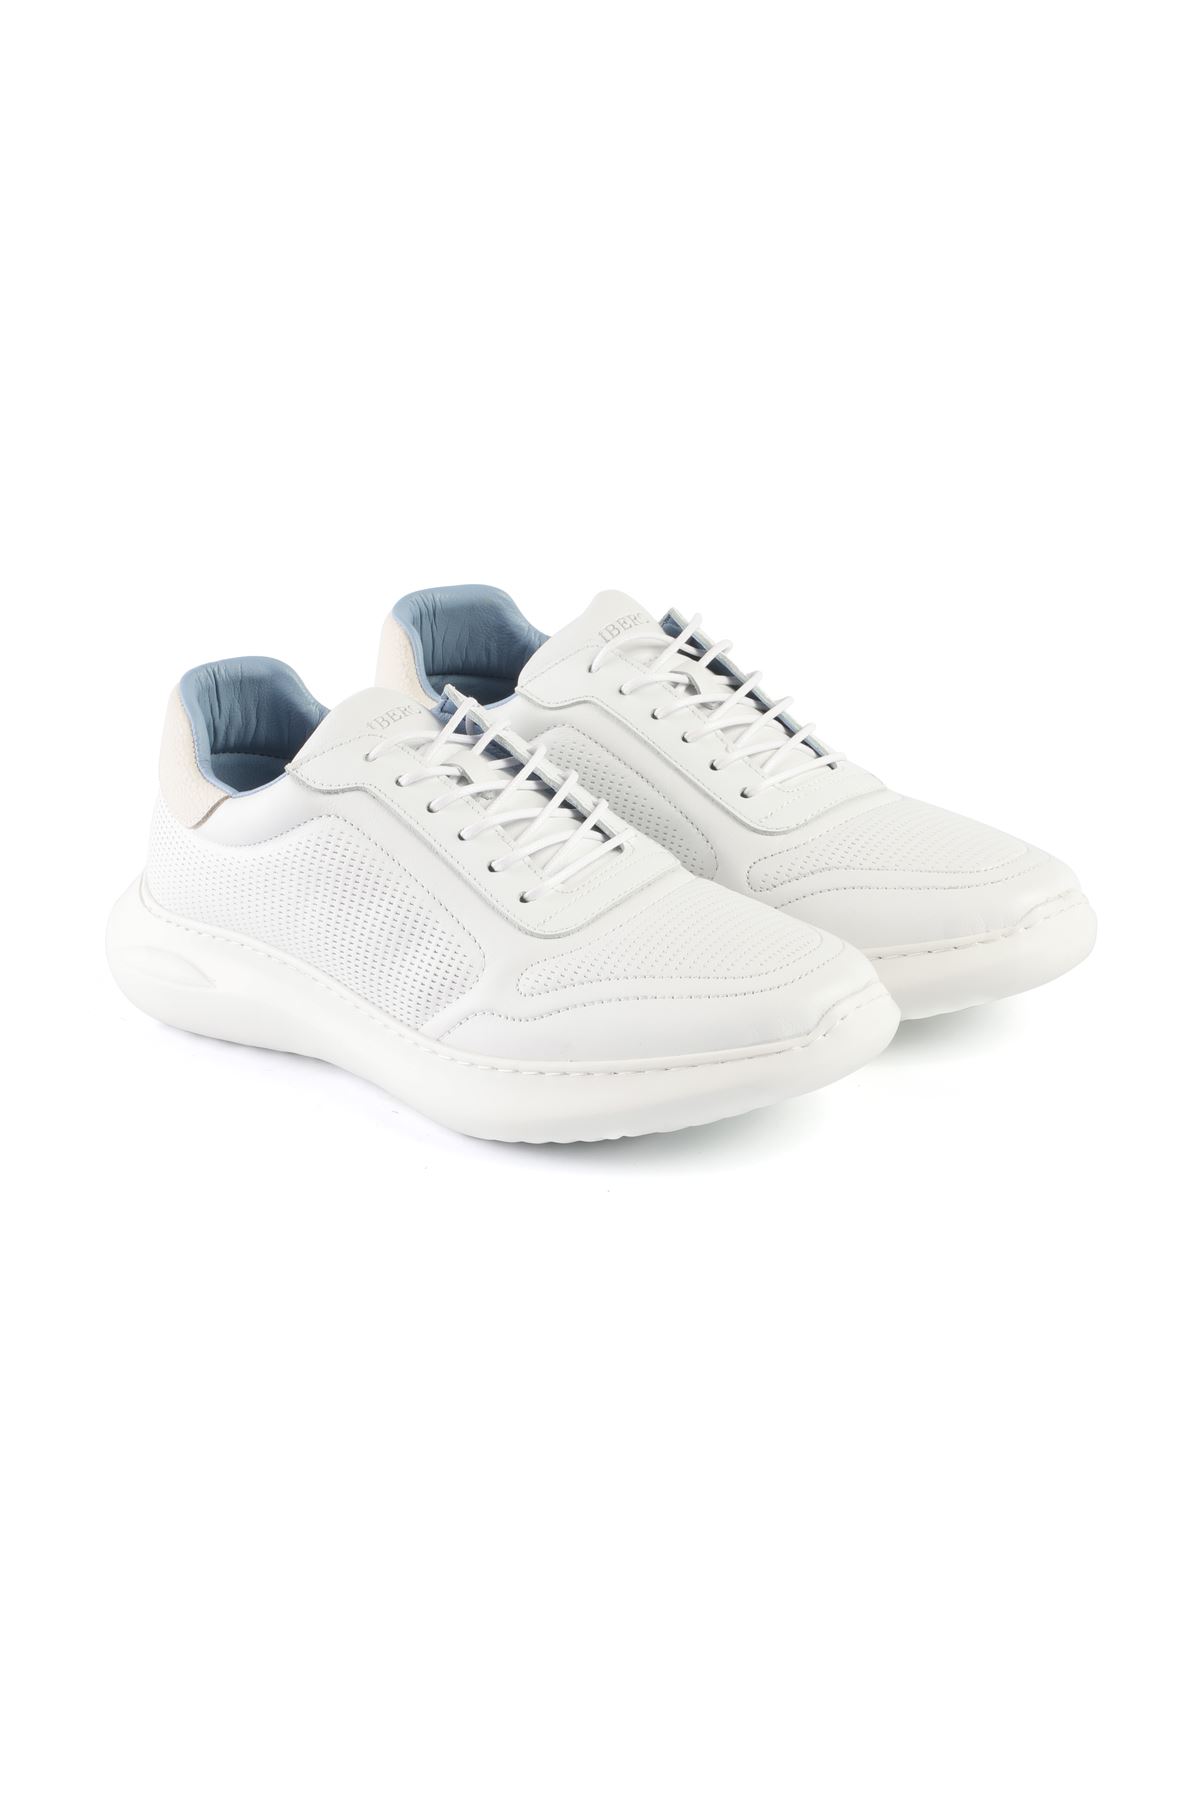 Libero L3401 Beyaz Erkek Spor Ayakkabı 